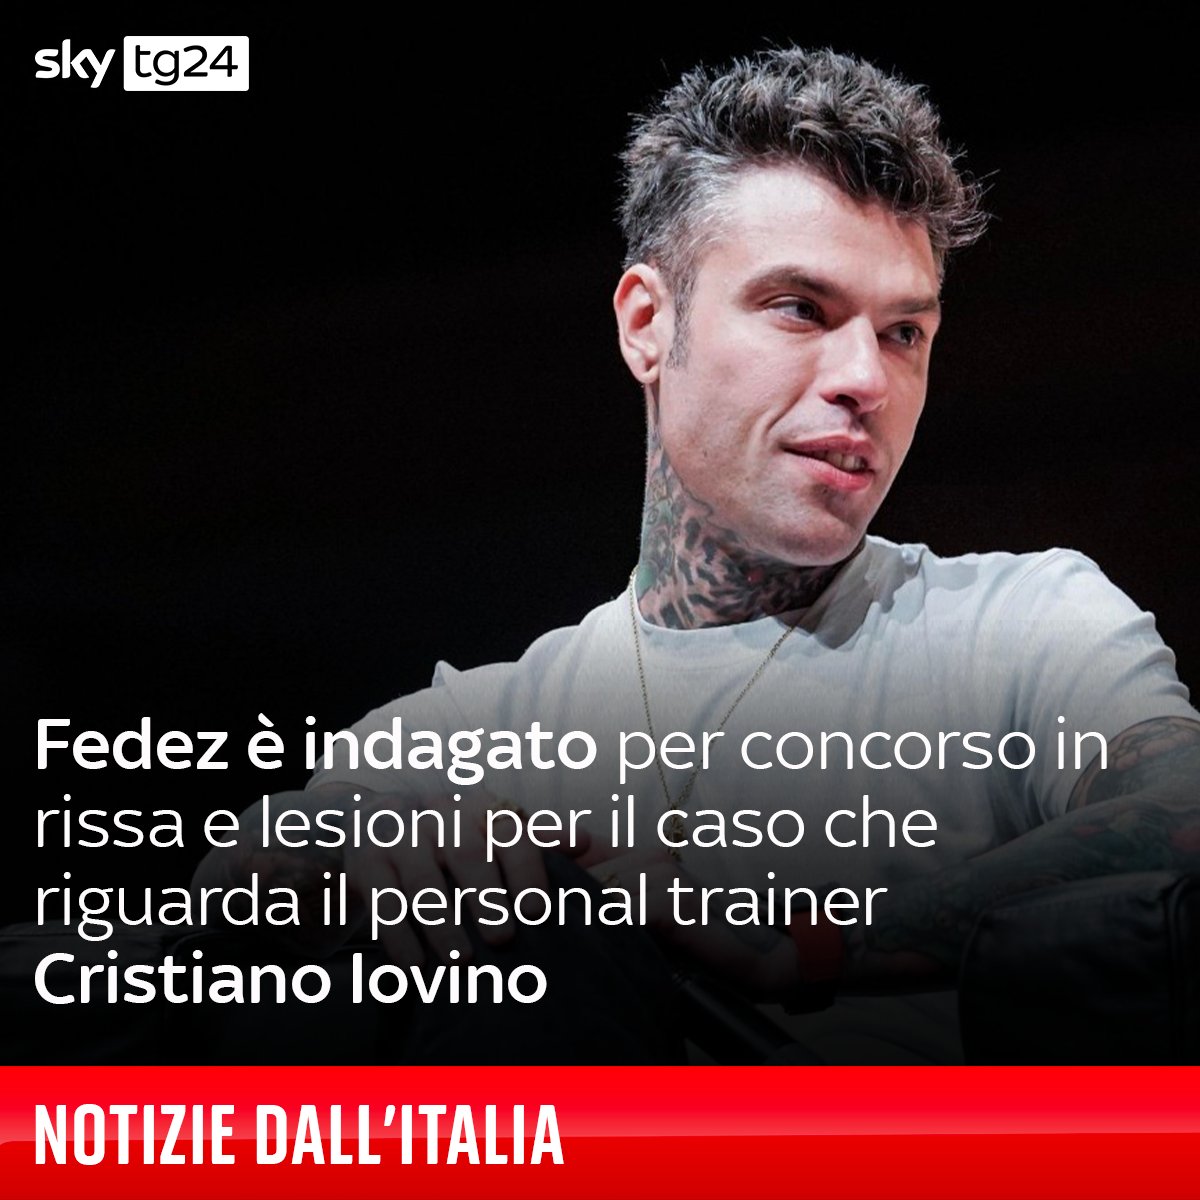 Il personal trainer Cristiano #Iovino è stato picchiato nella notte tra il 21 e il 22 aprile scorso davanti al suo appartamento milanese da un gruppo di 8-9 persone ➡️ tinyurl.com/y2ww5vjj